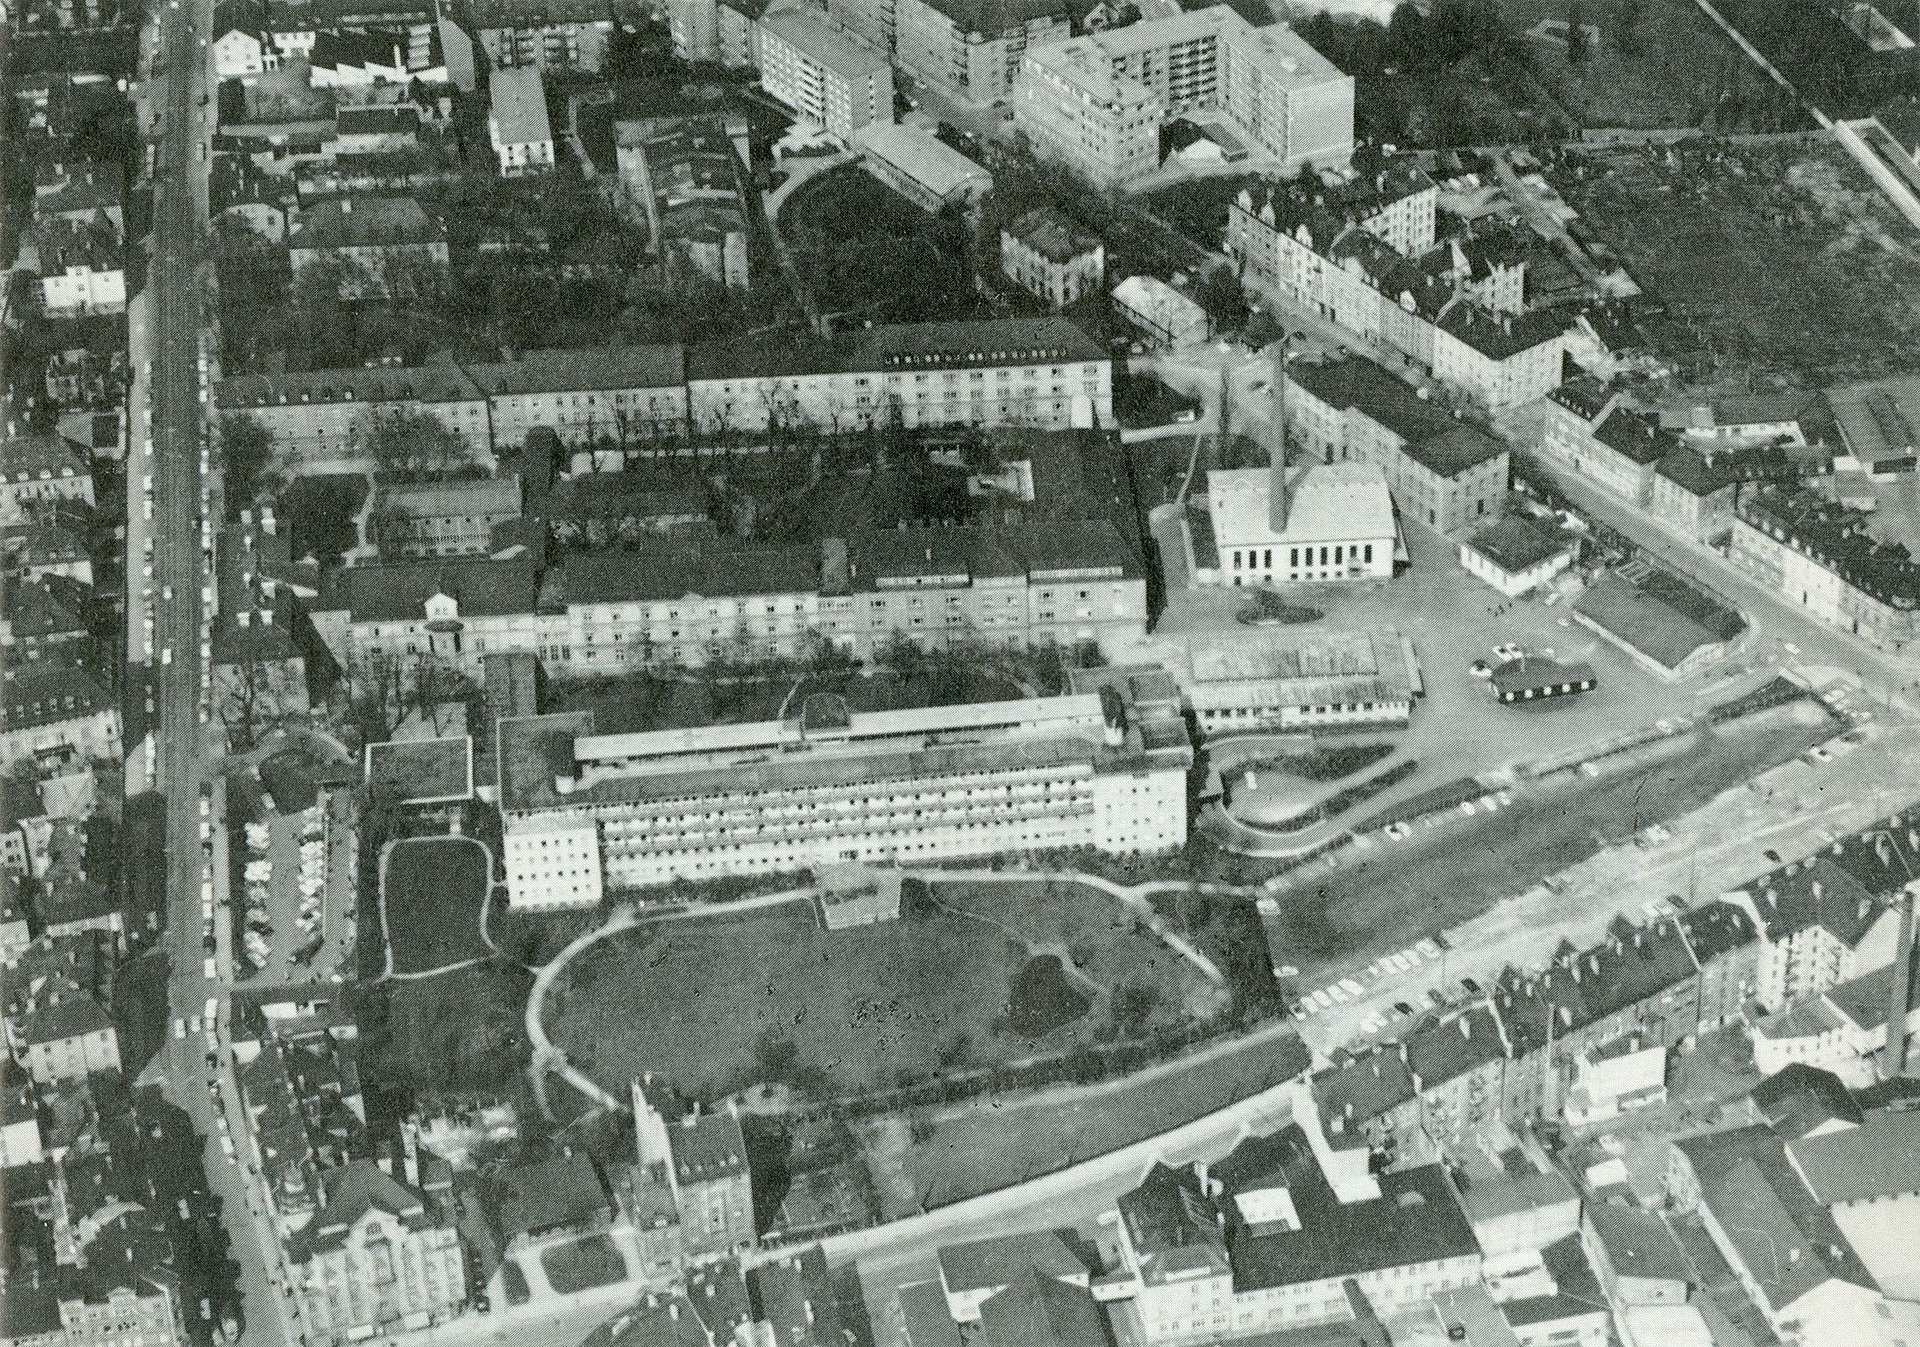 Aerial view of Klinikum rechts der Isar in 1964